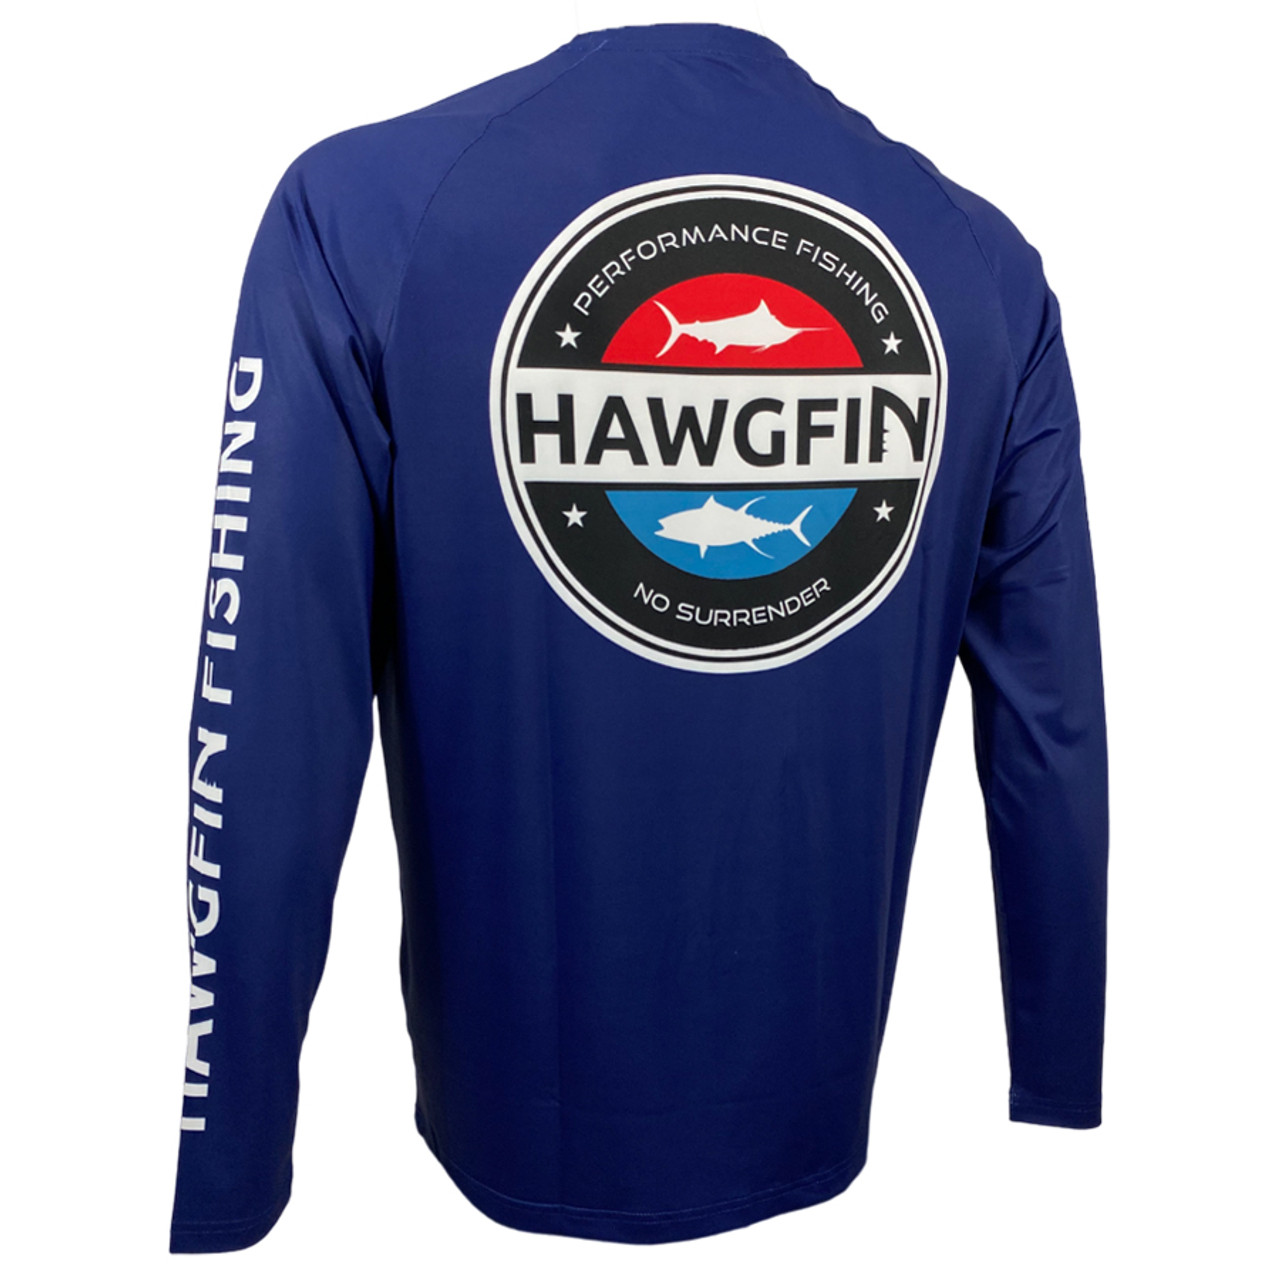 HAWGFIN USA No Surrender Marlin Tuna Performance Long Sleeve